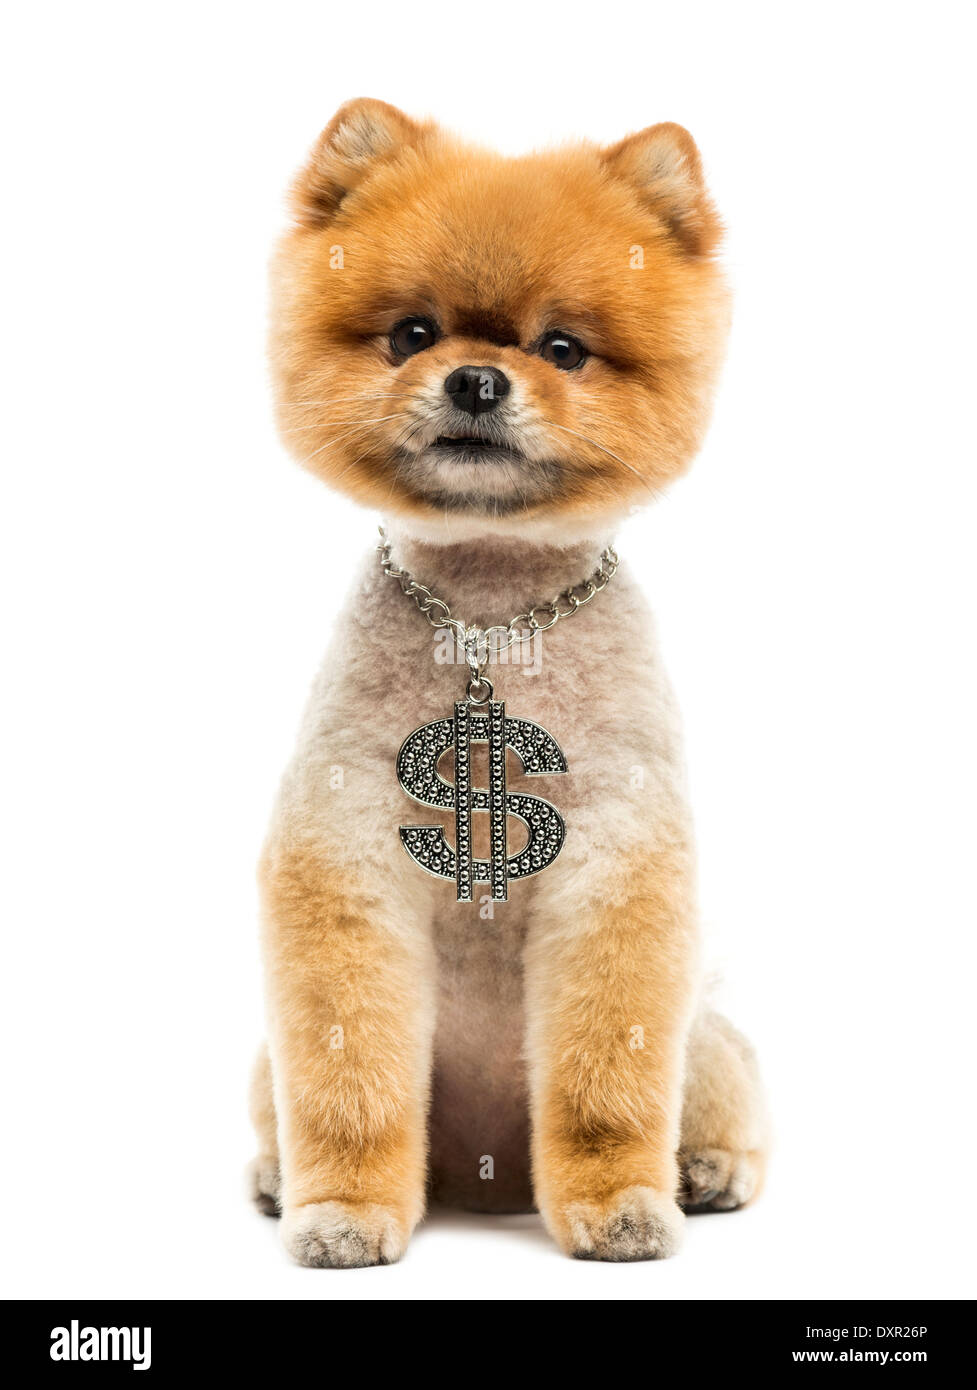 Battute di Pomerania dog sitter e indossa una collana del dollaro contro uno sfondo bianco Foto Stock